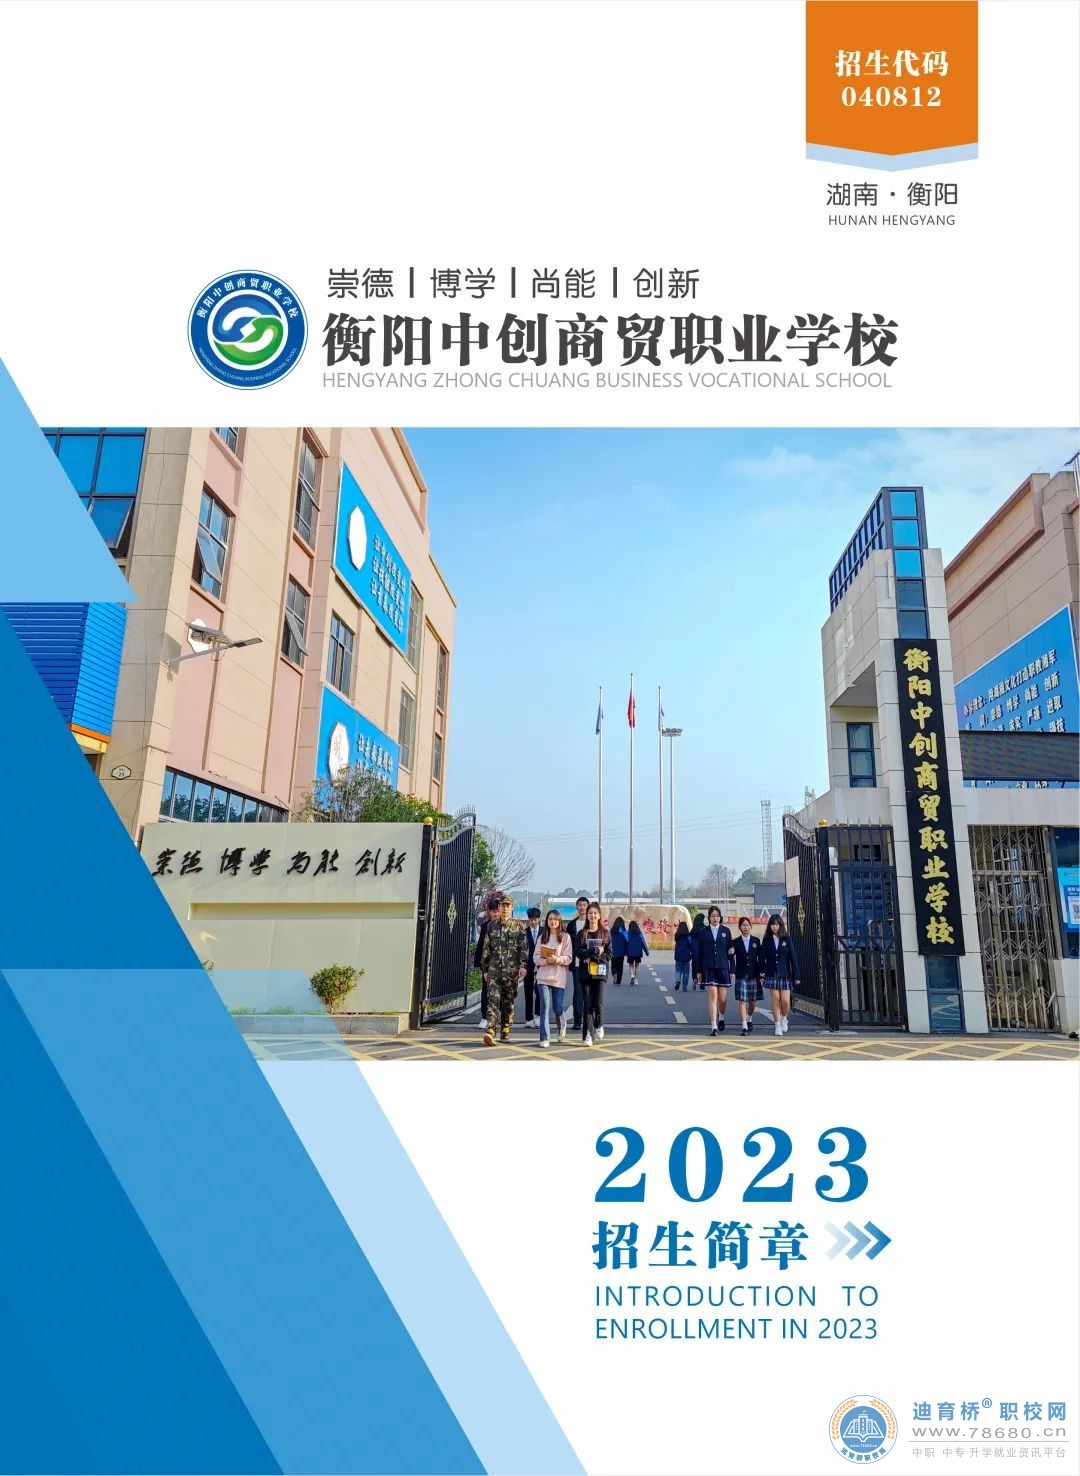 
衡阳中创商贸职业学校2023年招生简章